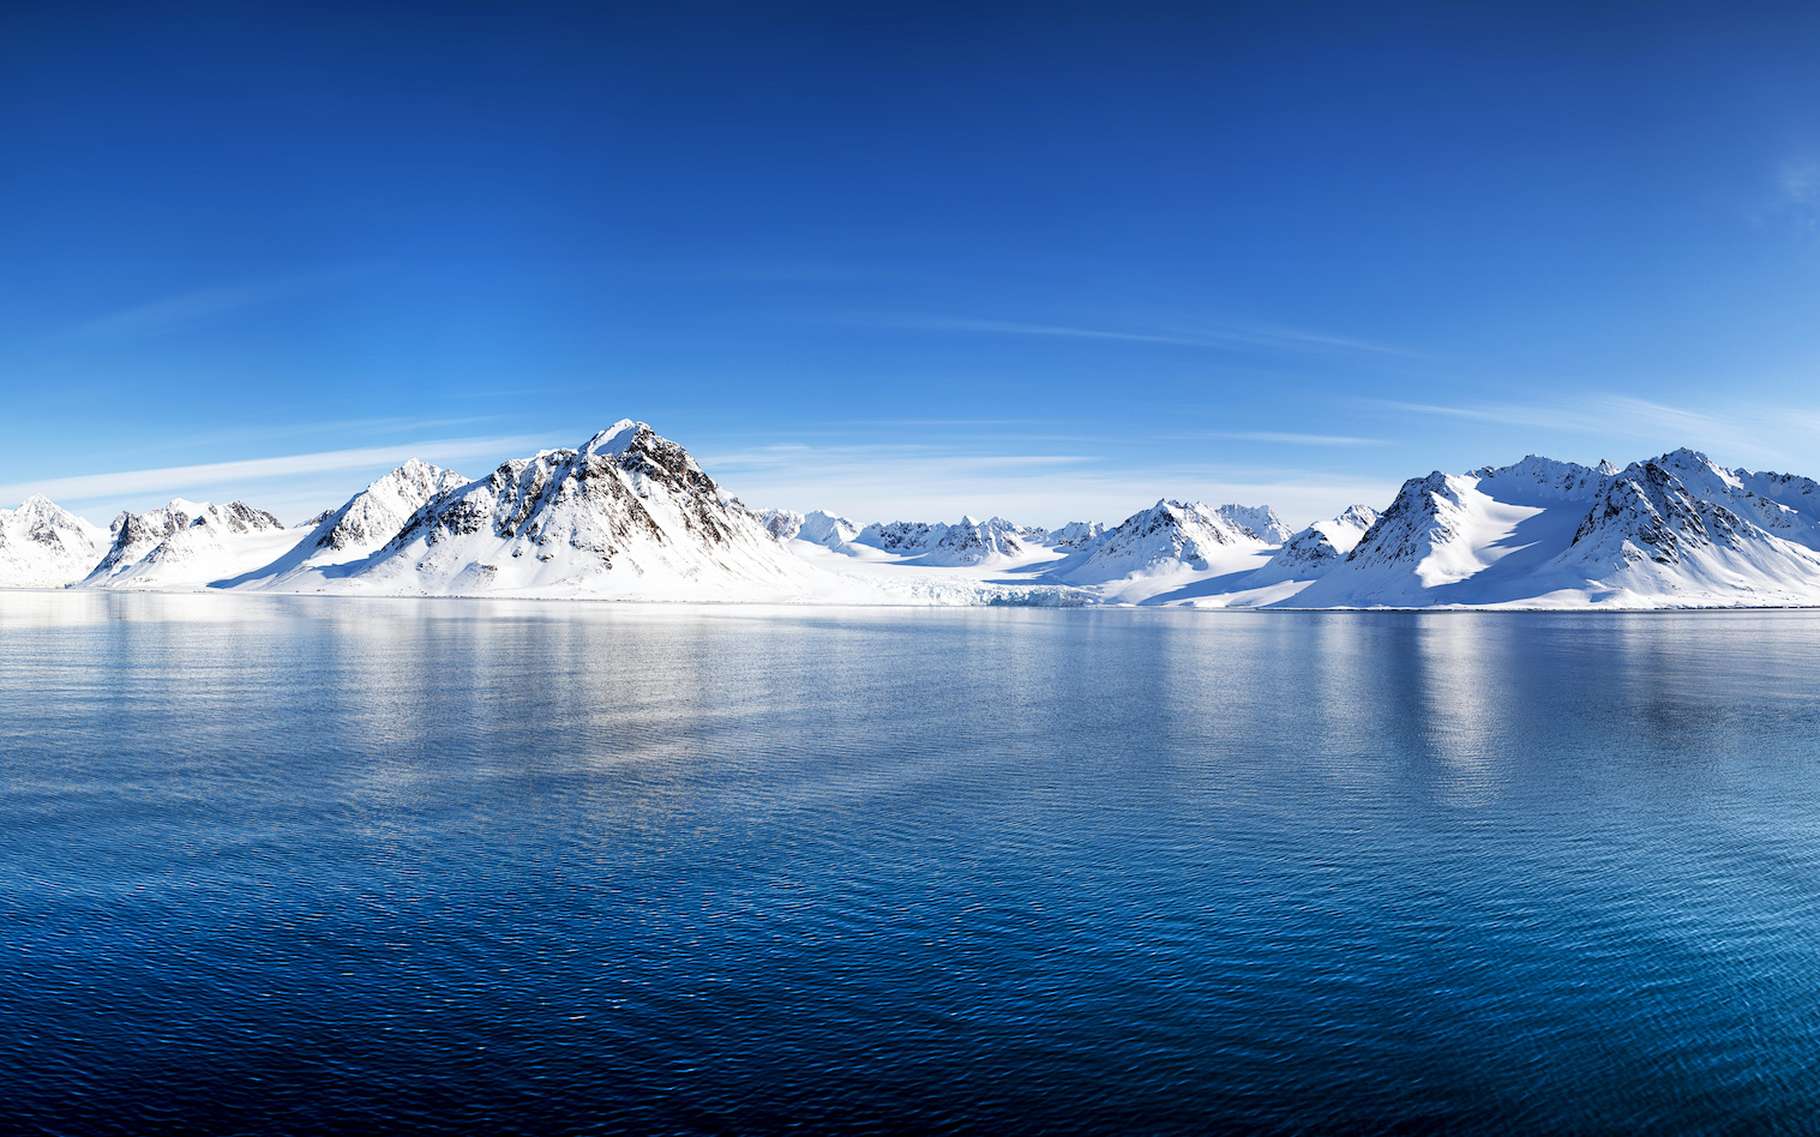 Des chercheurs de l’université de Cambridge (Royaume-Uni) montrent que le réchauffement de l’océan Articque a commencé bien plus tôt qu’ils ne le pensaient jusque-là. © Rixie, Adobe Stock